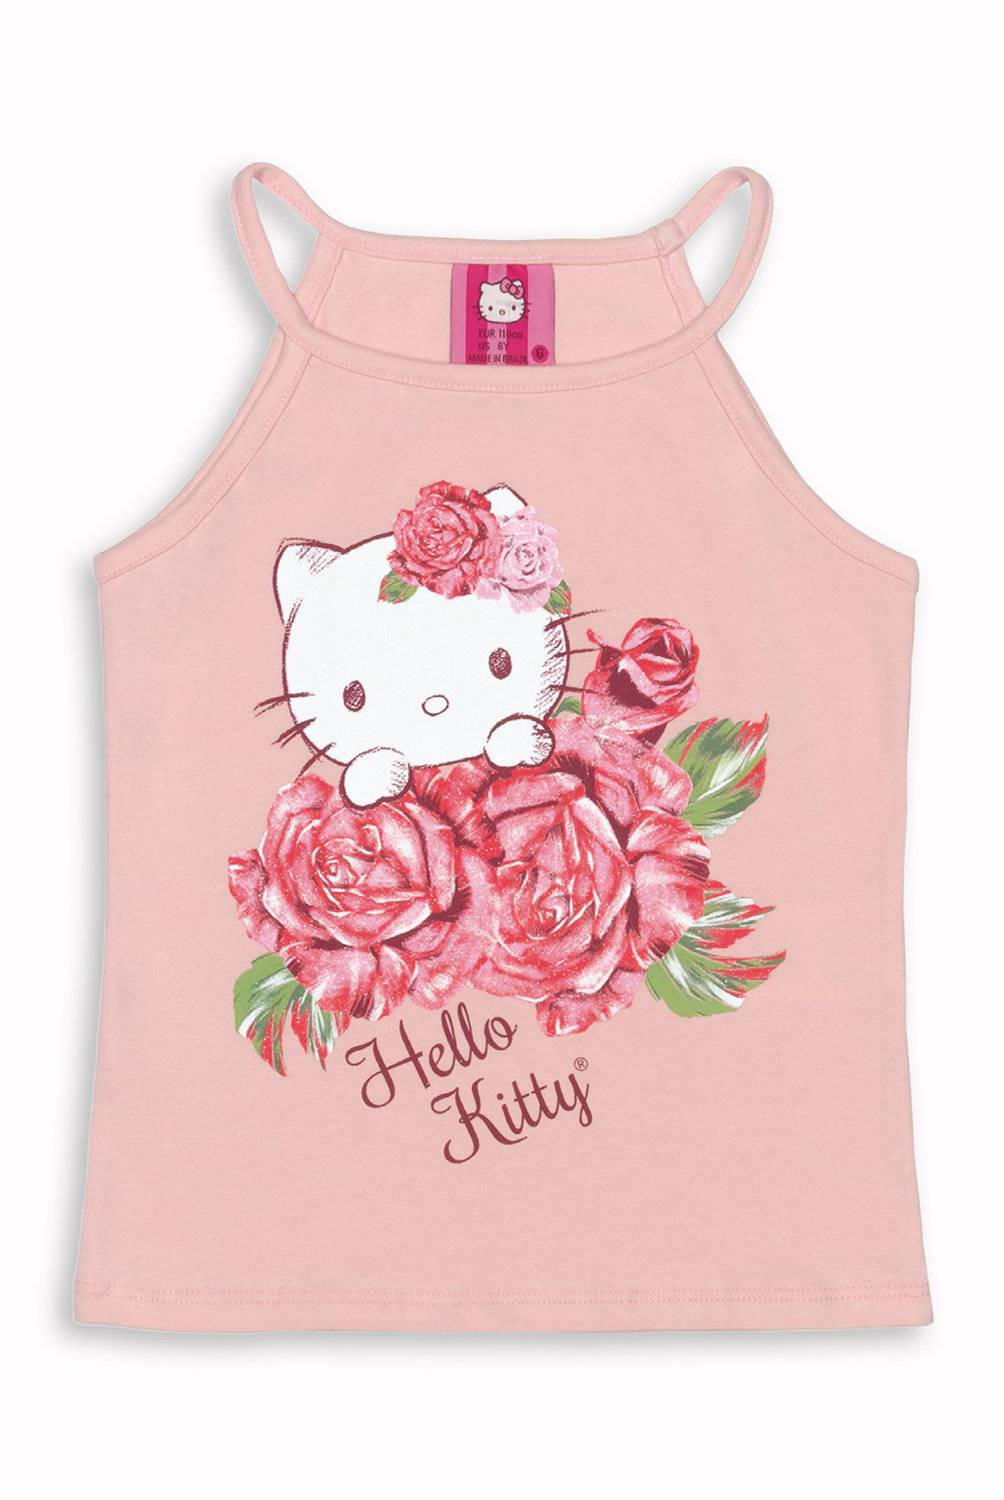 HELLO KITTY - Polera Sin Mangas Rosada Hello Kitty